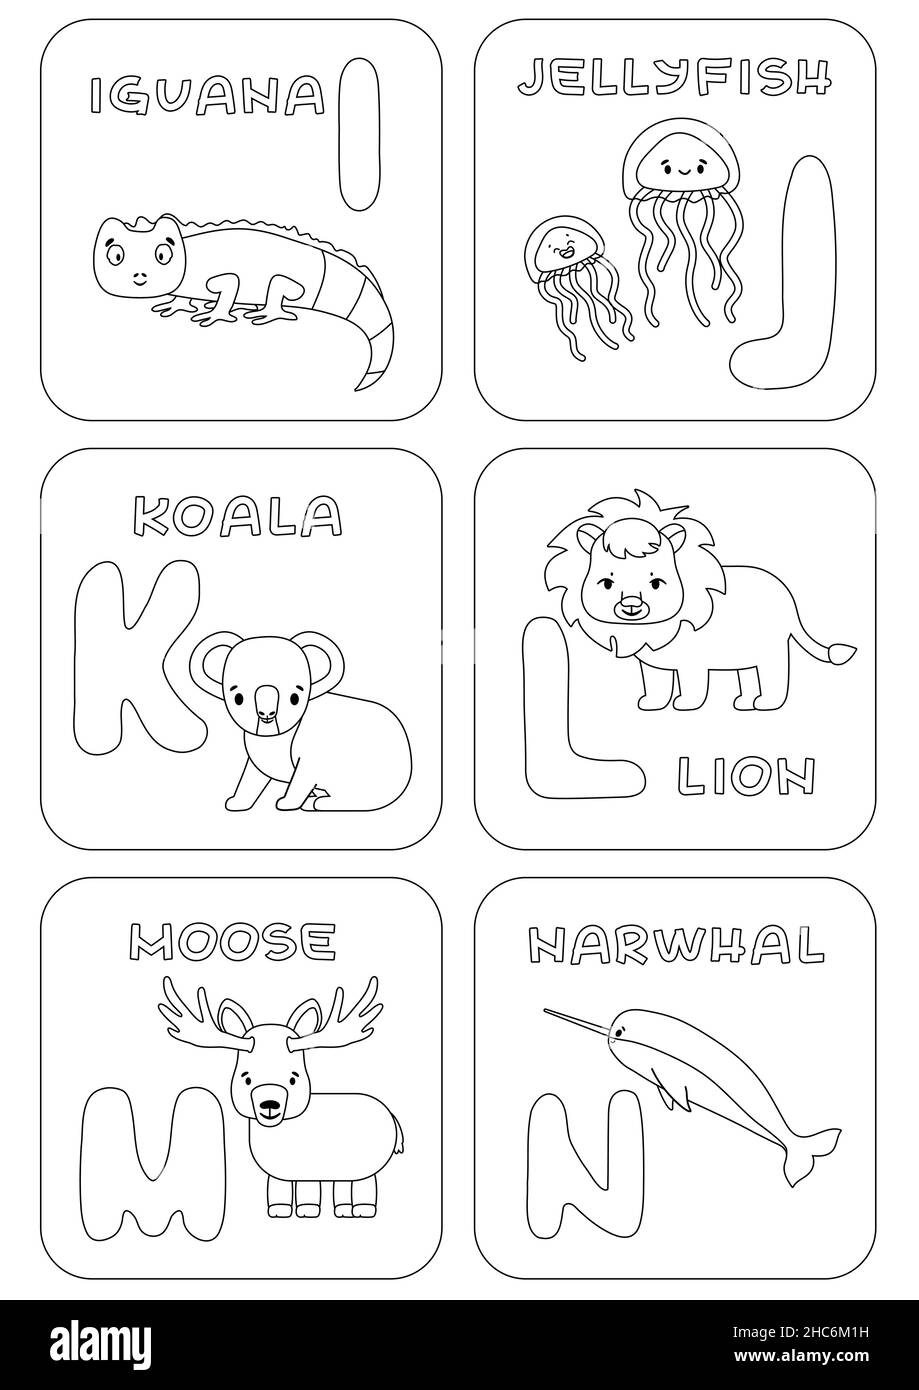 Alfabeto inglés I-N juego de niños de la familia. Colorear páginas con animales y cartas que se pueden utilizar para aprender, la educación juegos infantiles. Vector Imagen Vector de stock -